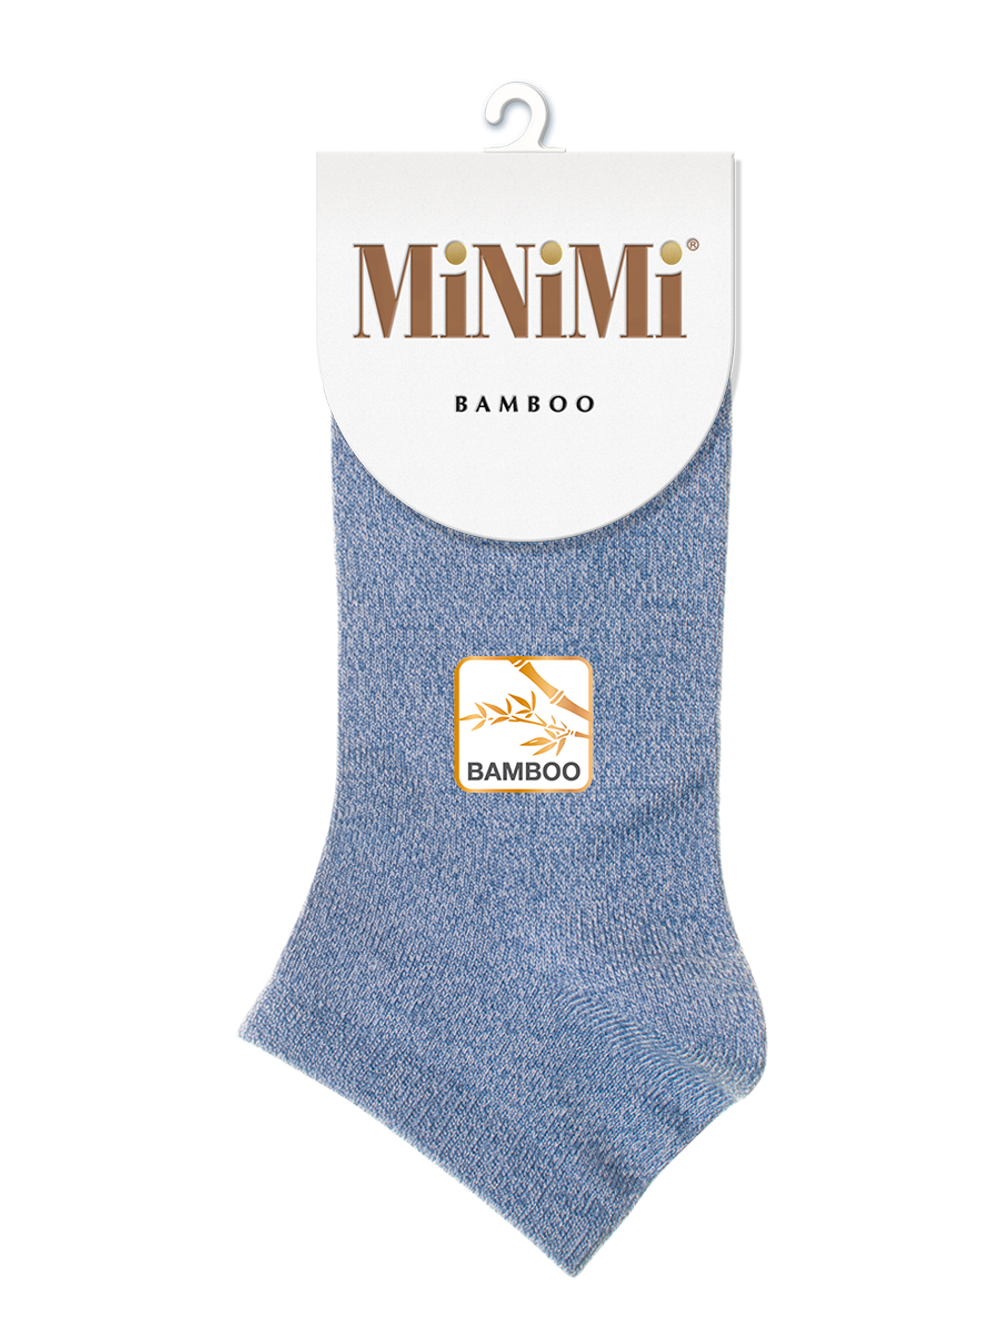 MiNiMi BAMBOO 2203 носки укороченные